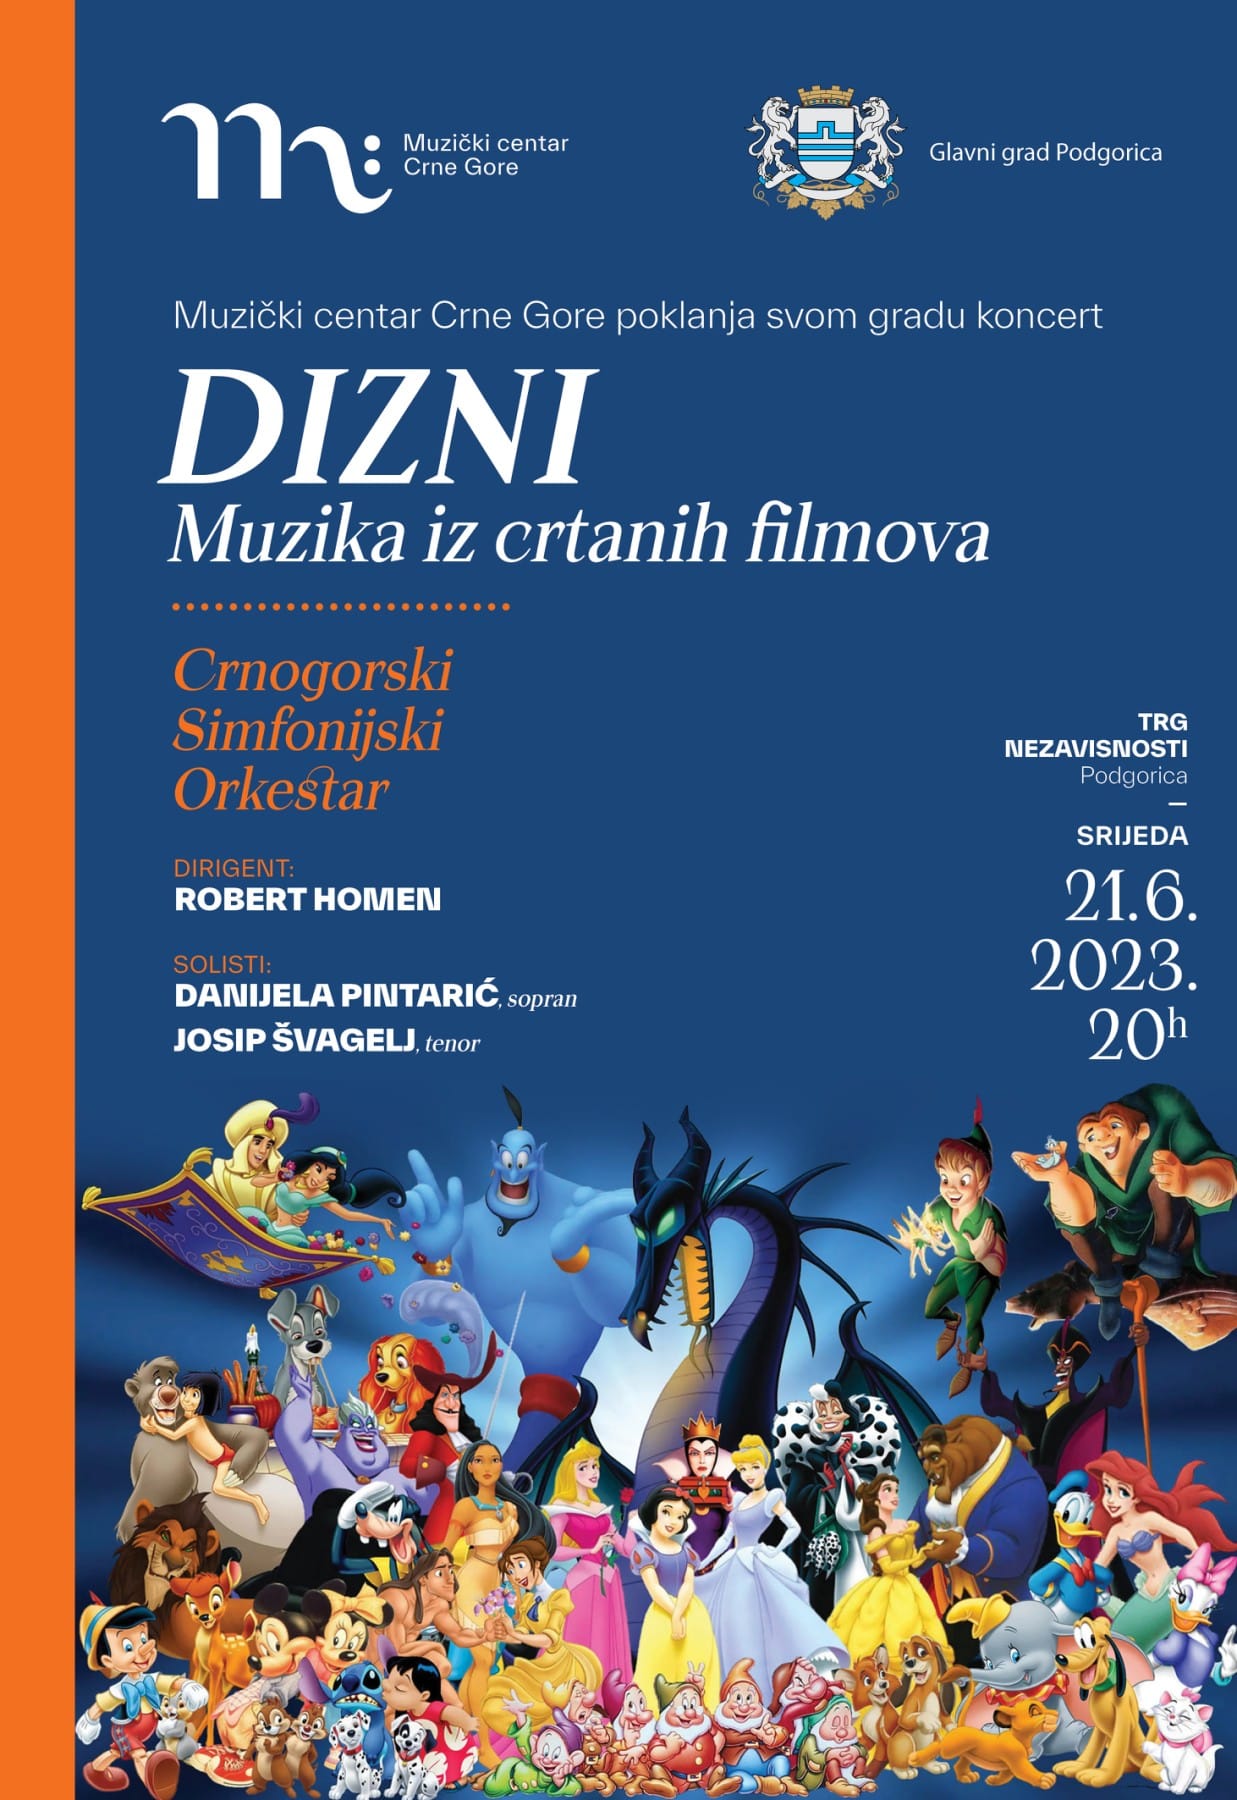 Koncert Crnogorskog simfonijskog orkestra na Trgu nezavisnoti